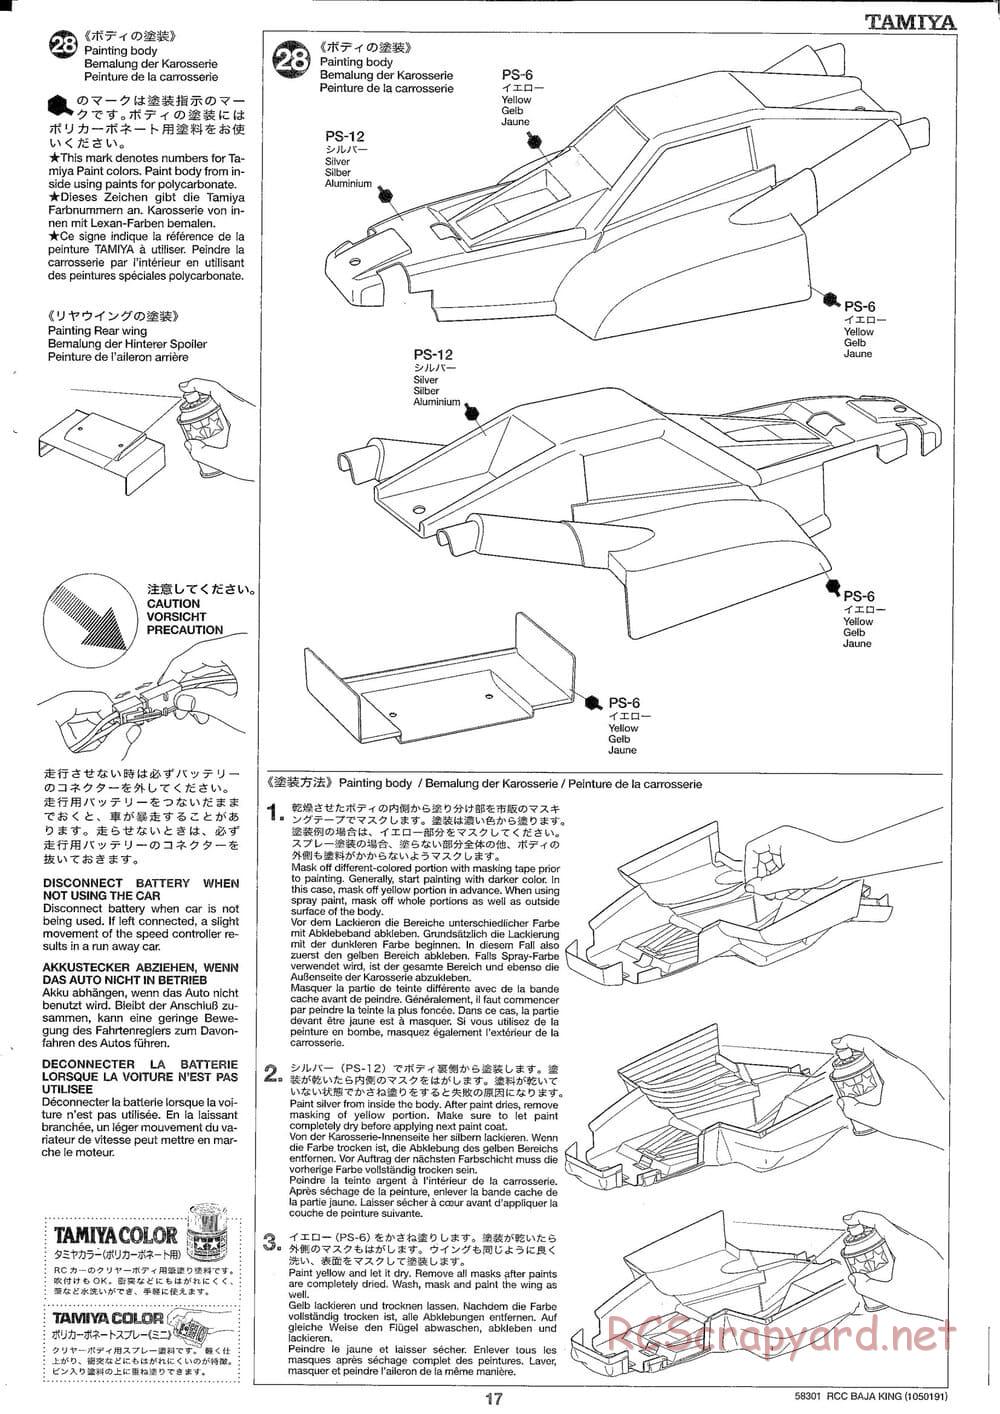 Tamiya - Baja King - TL-01B Chassis - Manual - Page 17